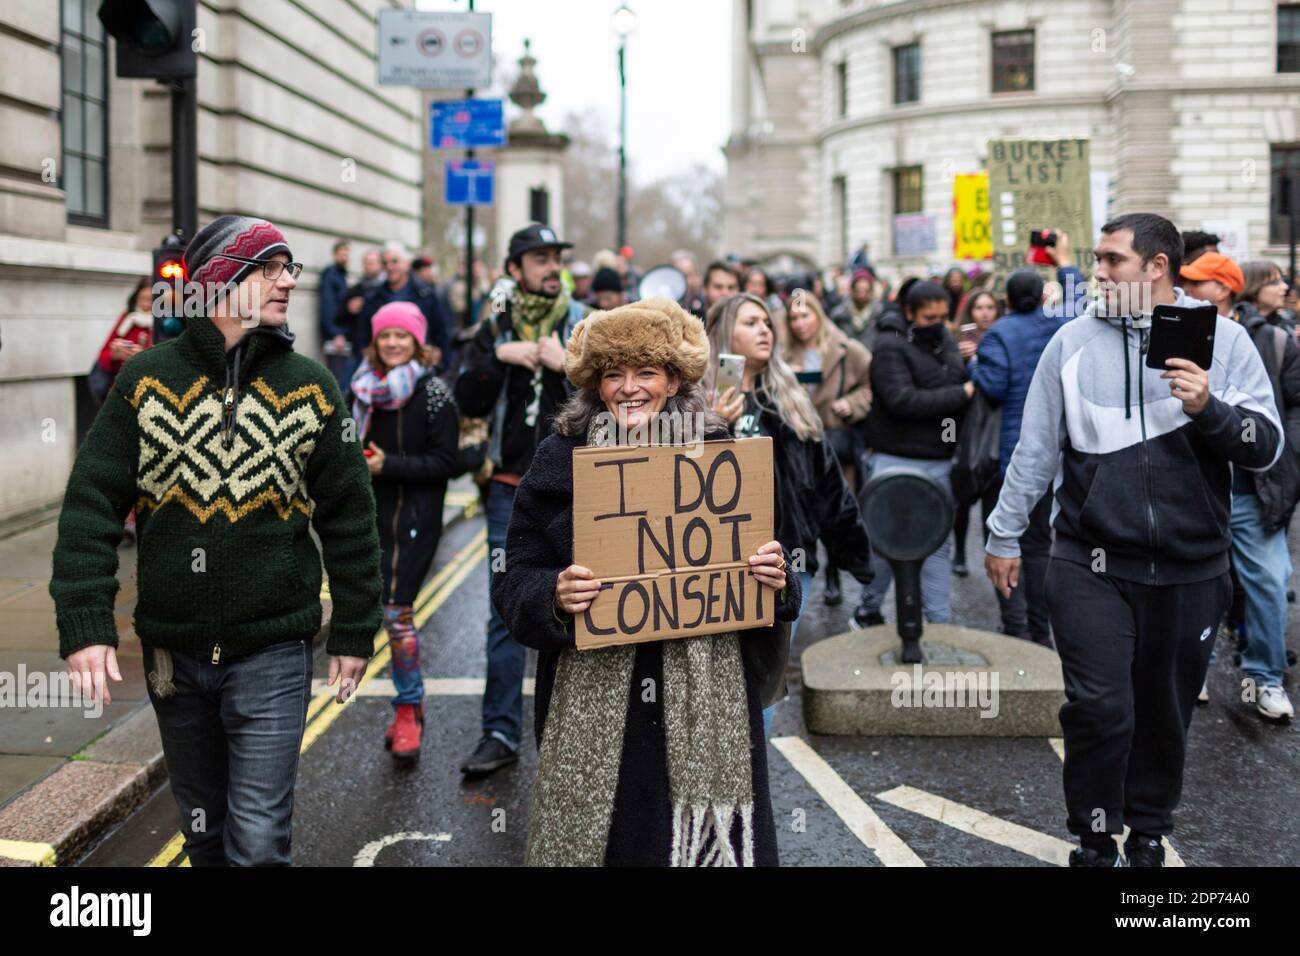 Des manifestants défilent lors de la manifestation contre la vaccination de la COVID-19, Westminster, Londres, 14 décembre 2020 Banque D'Images